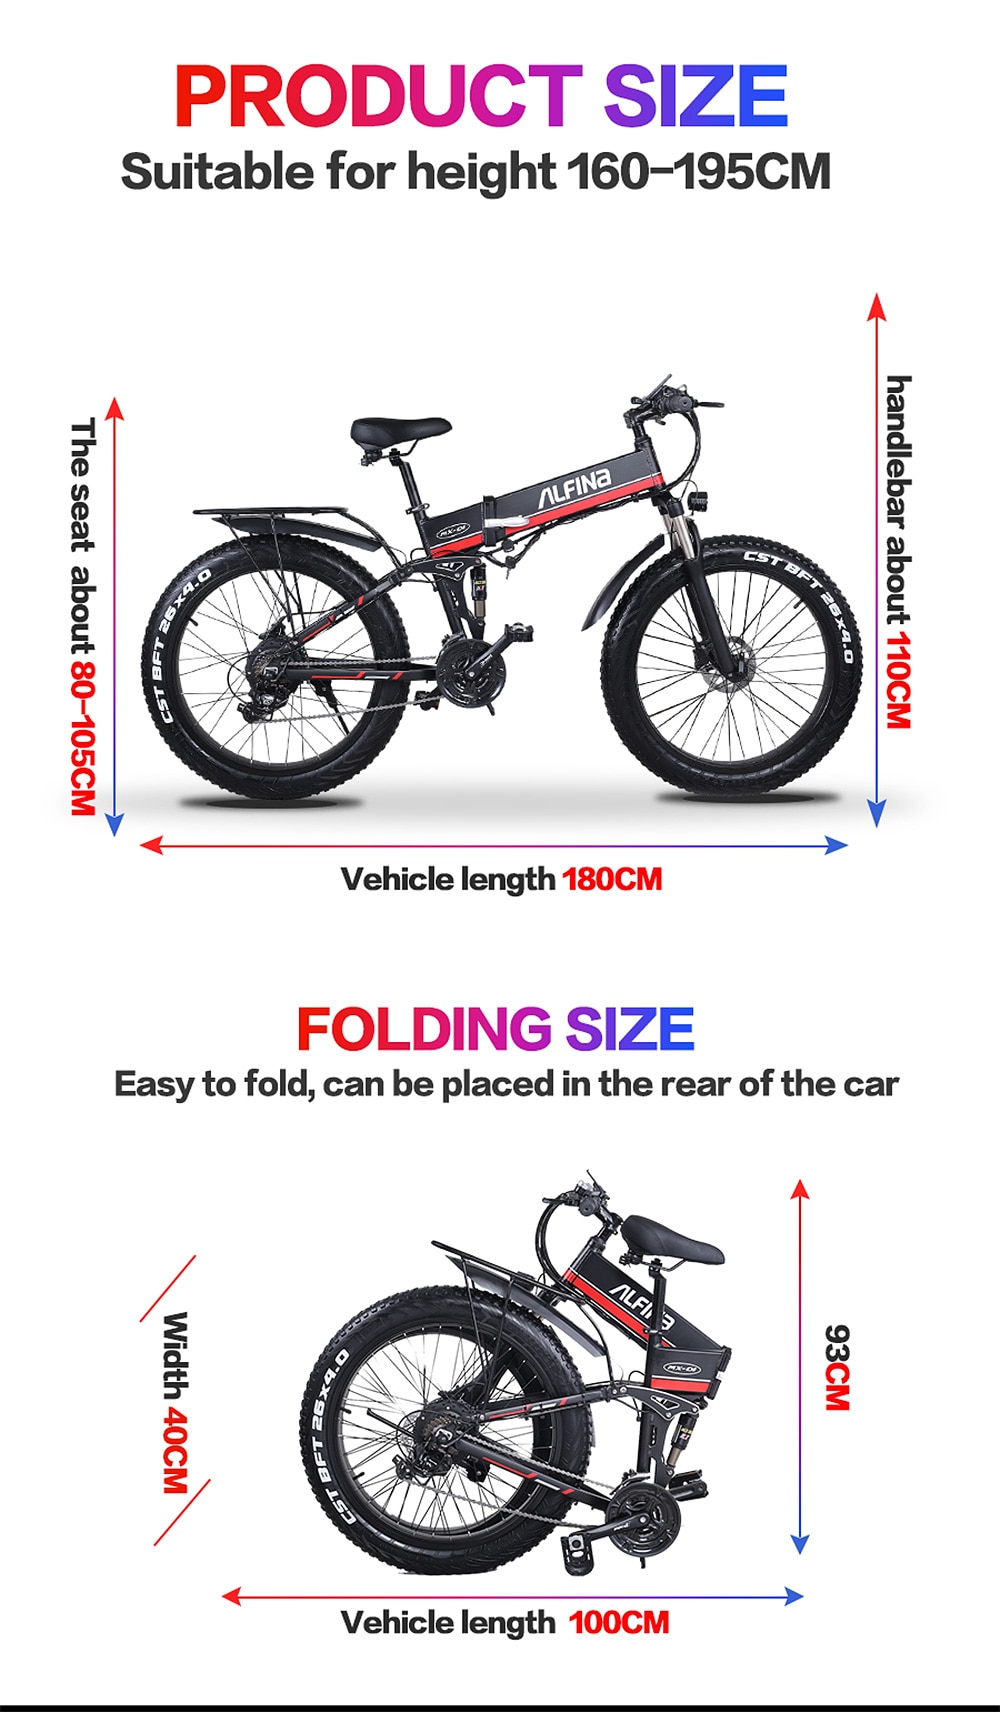 (EU Stock)ALFINA FX-01 1000W 12.8AH Mountain Electric Bike SnowBike MTB 45KM/h 26 Inch Tires Waterproof and Foldable Ebike